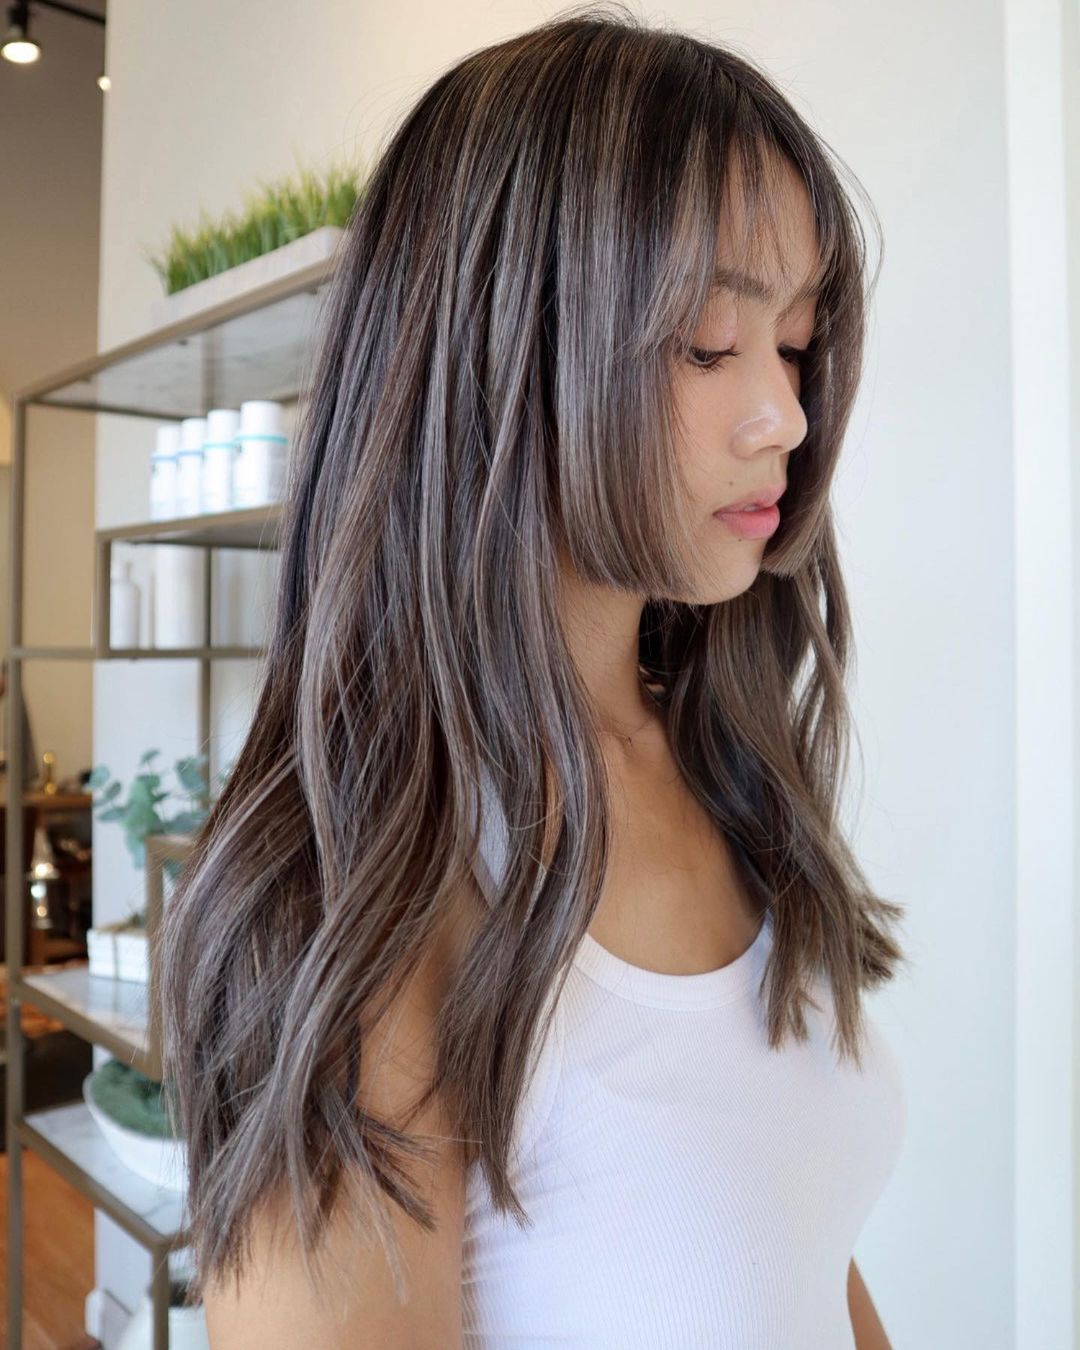 pelo largo ondulado y corte hime japonés